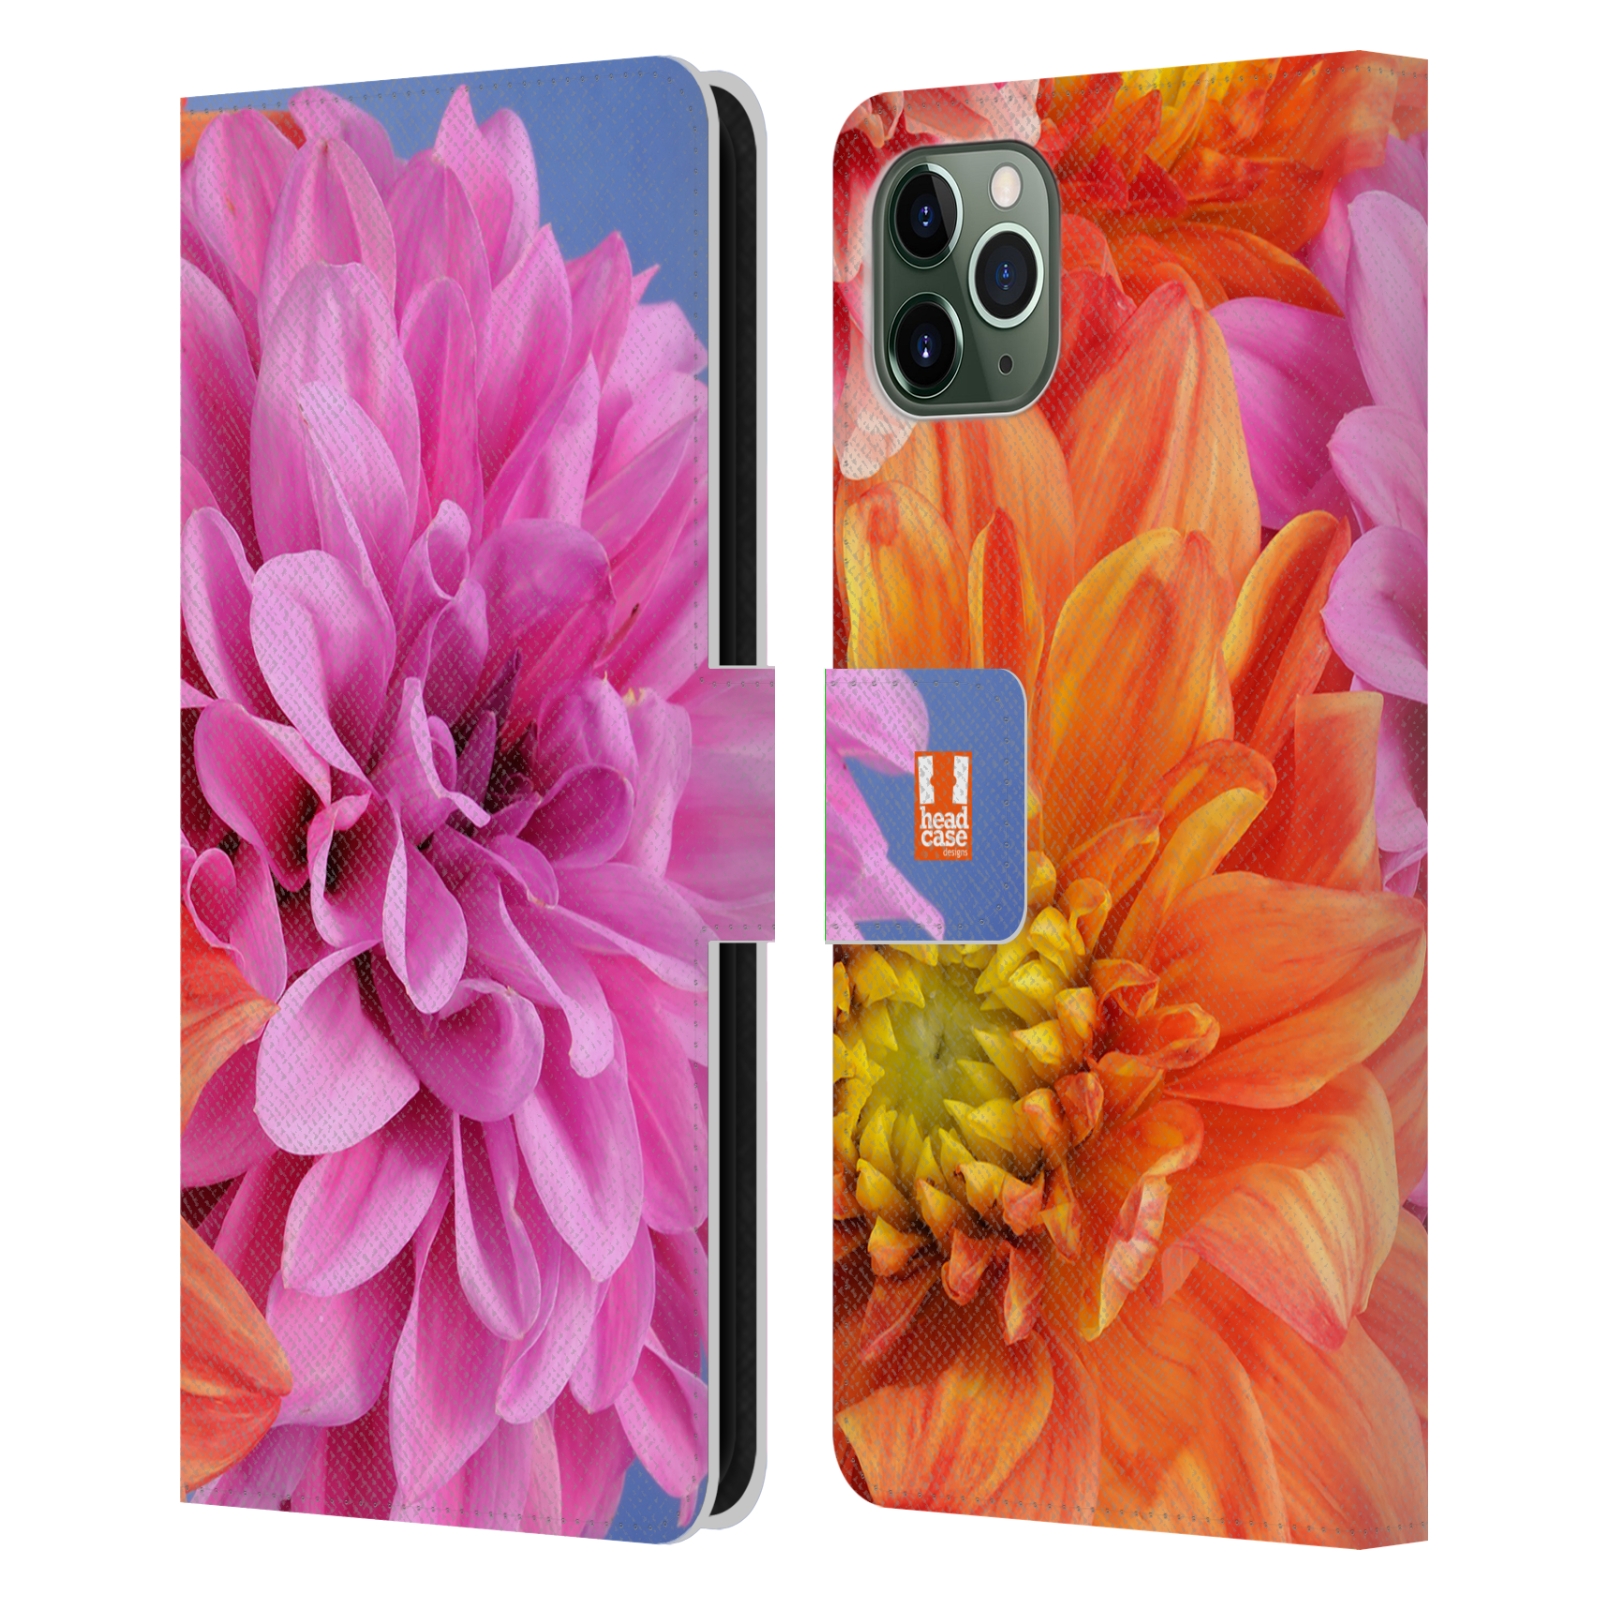 Pouzdro na mobil Apple Iphone 11 PRO MAX květy foto Jiřinka růžová a oranžová